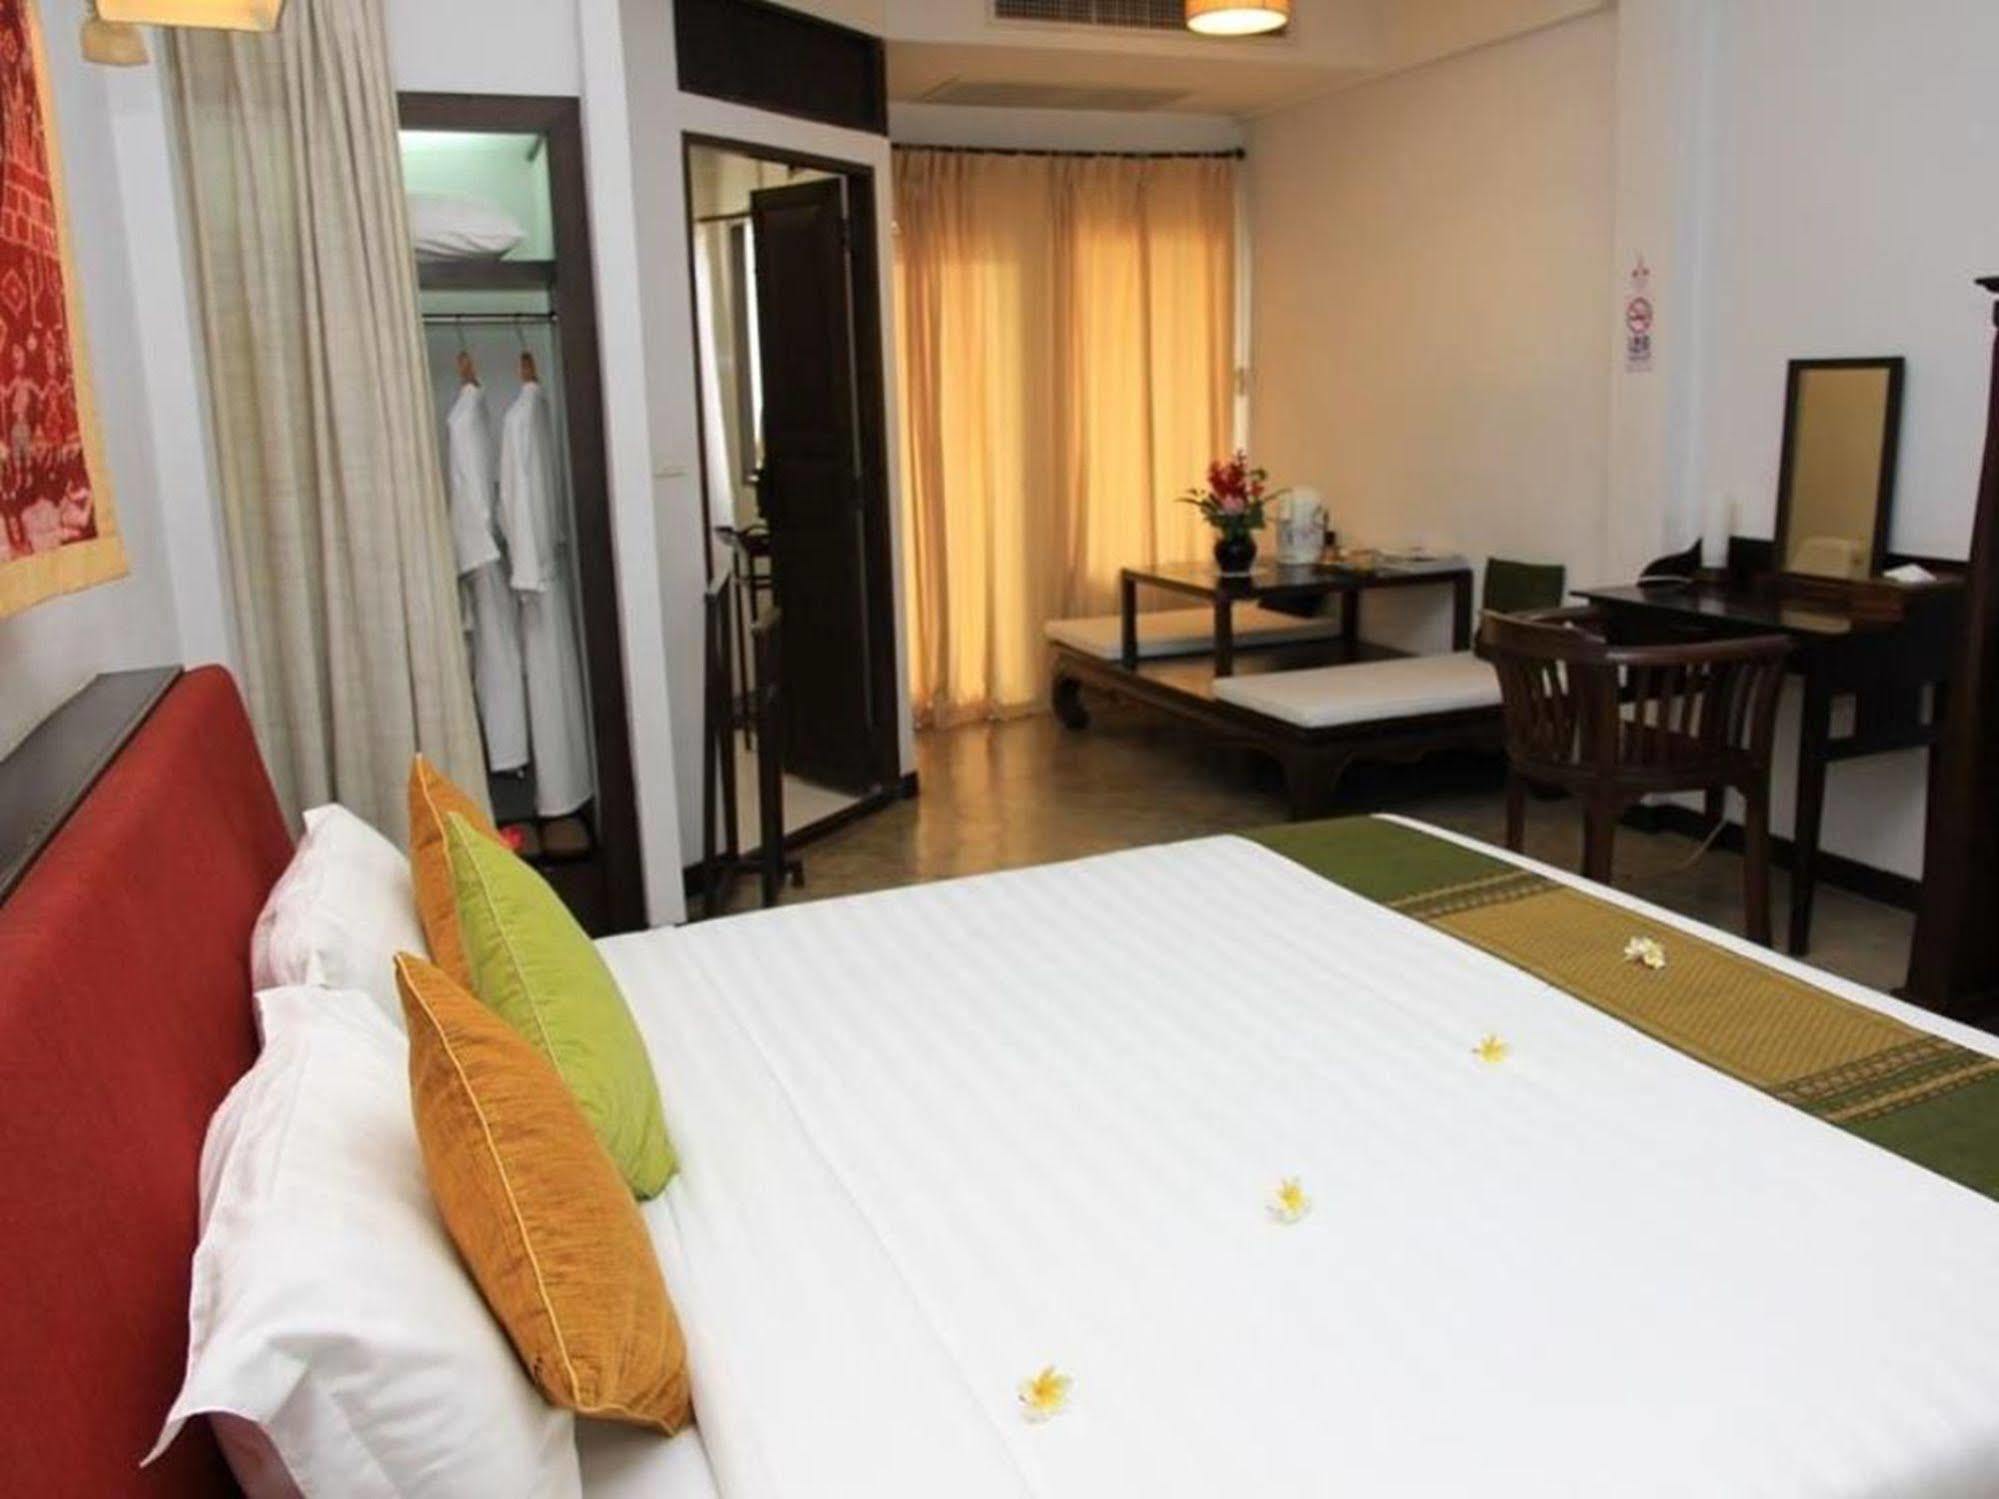 Ananda Museum Gallery Hotel, Sukhothai Zewnętrze zdjęcie